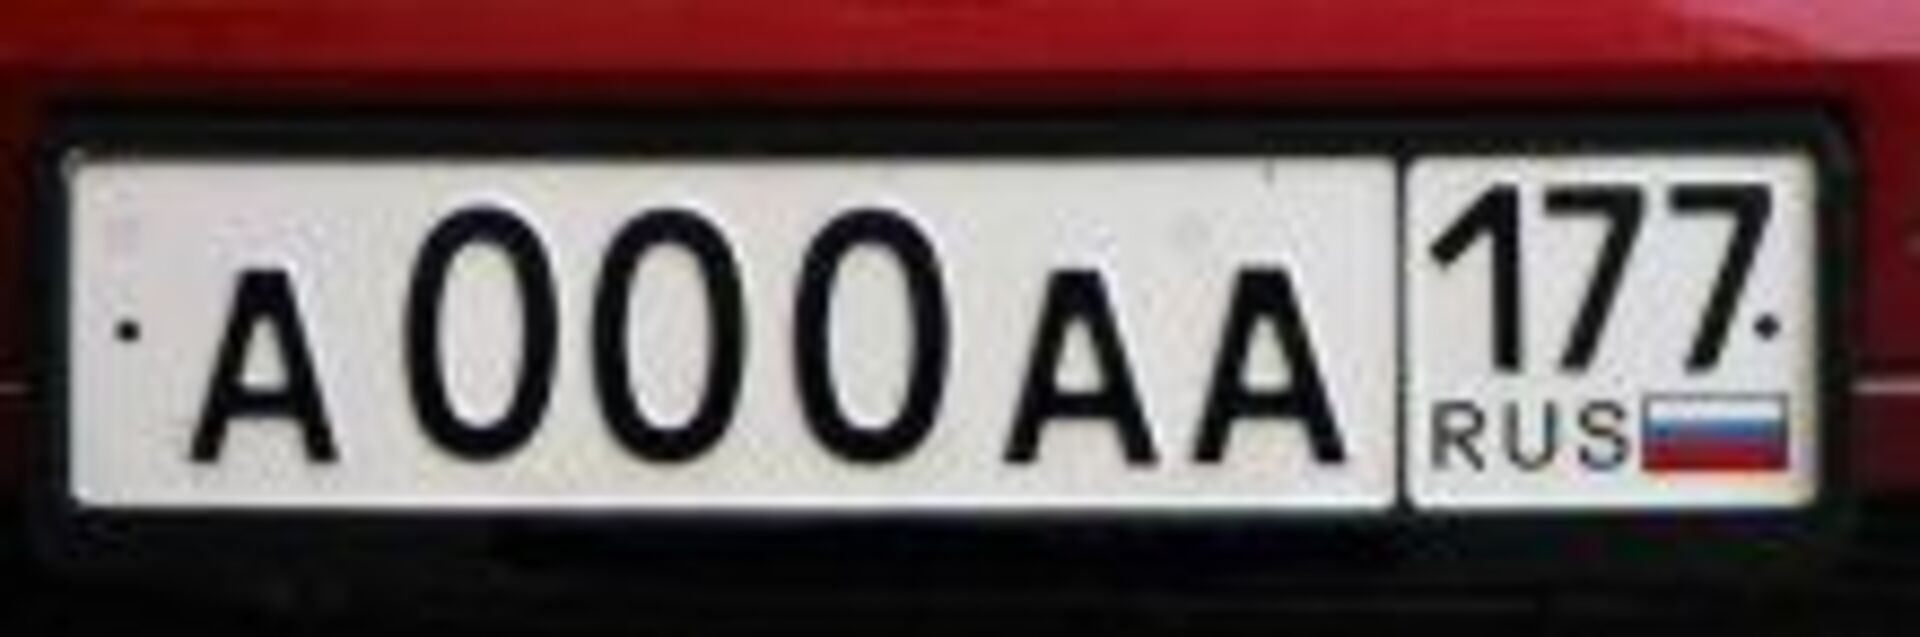 Гос номер автомобиля московская область. Автомобильные номера. Номерные знаки на авто. Российские номера машин. Российские номерные знаки.